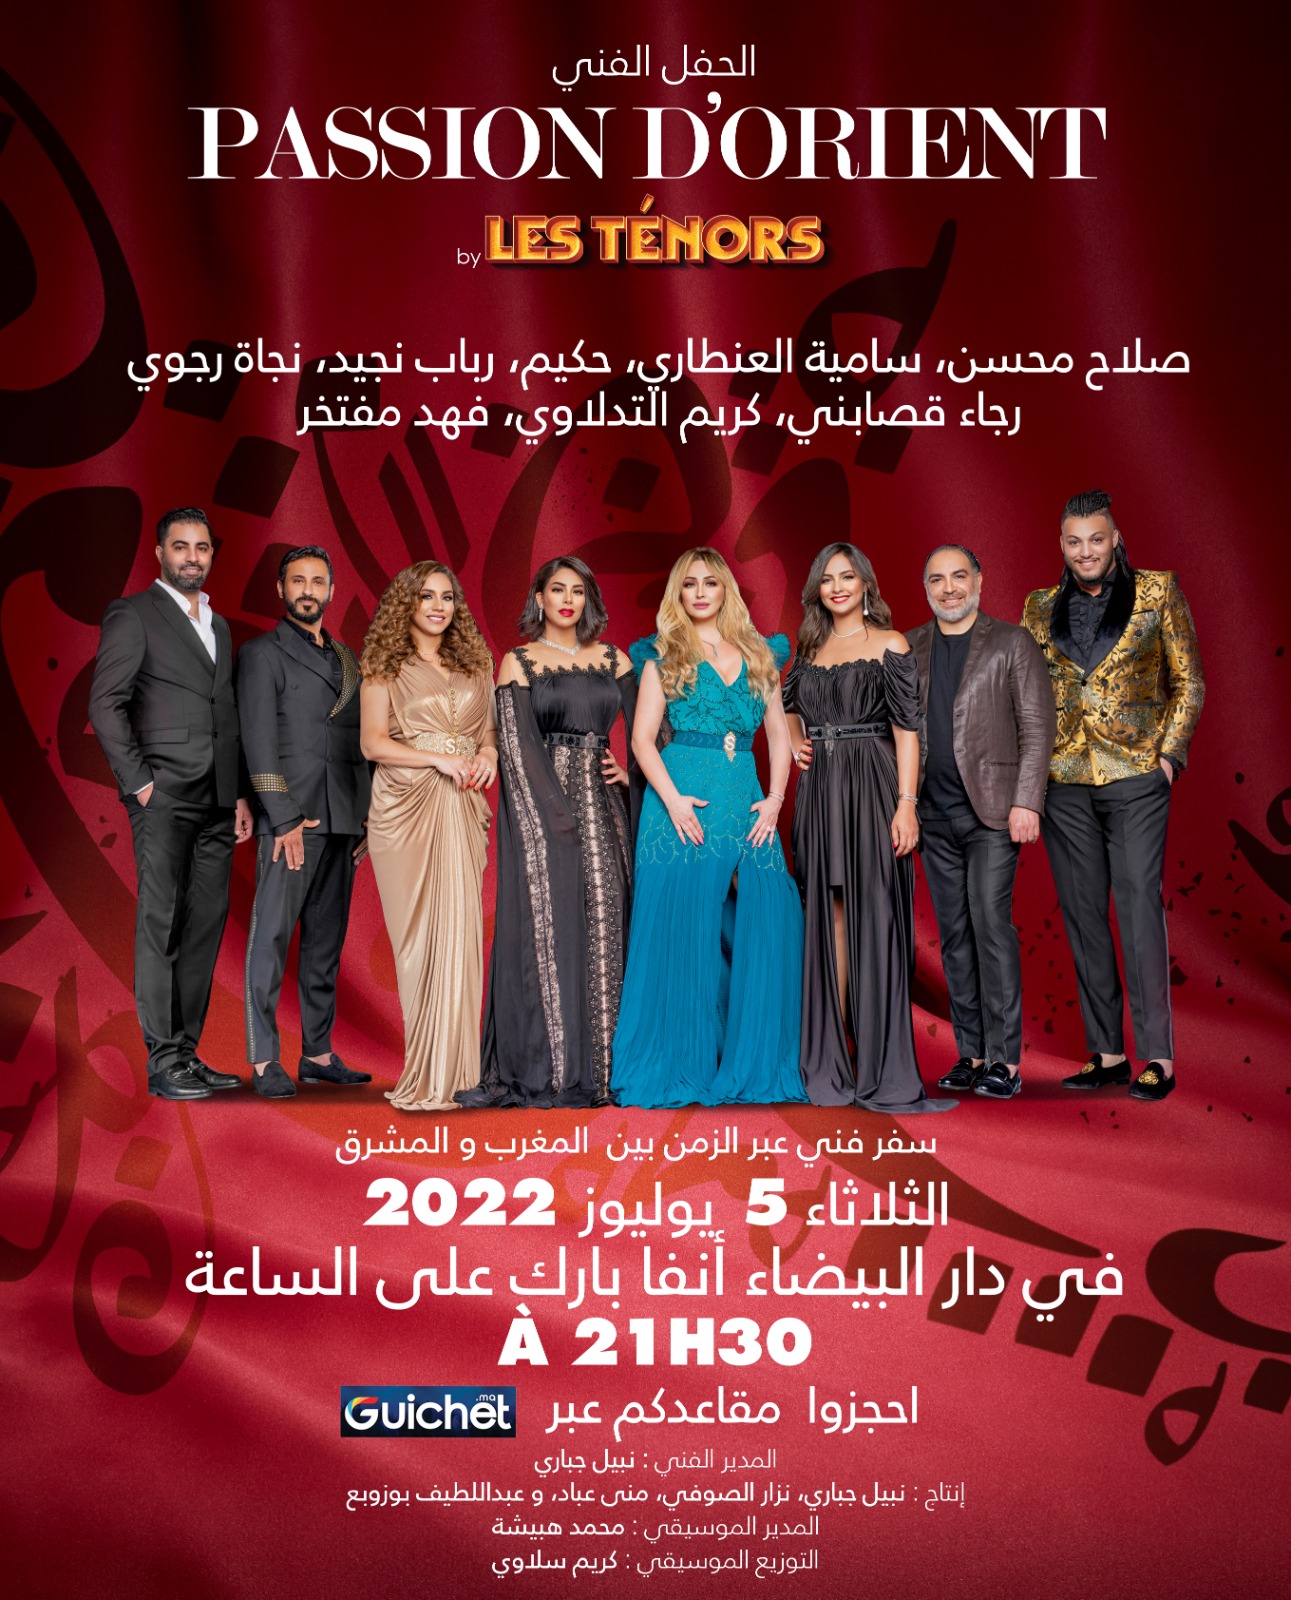 سفراء الغناء المغربي يشكلون فريق الأحلام في سهرة طربية غير مسبوقة بمسرح محمد الزفزاف